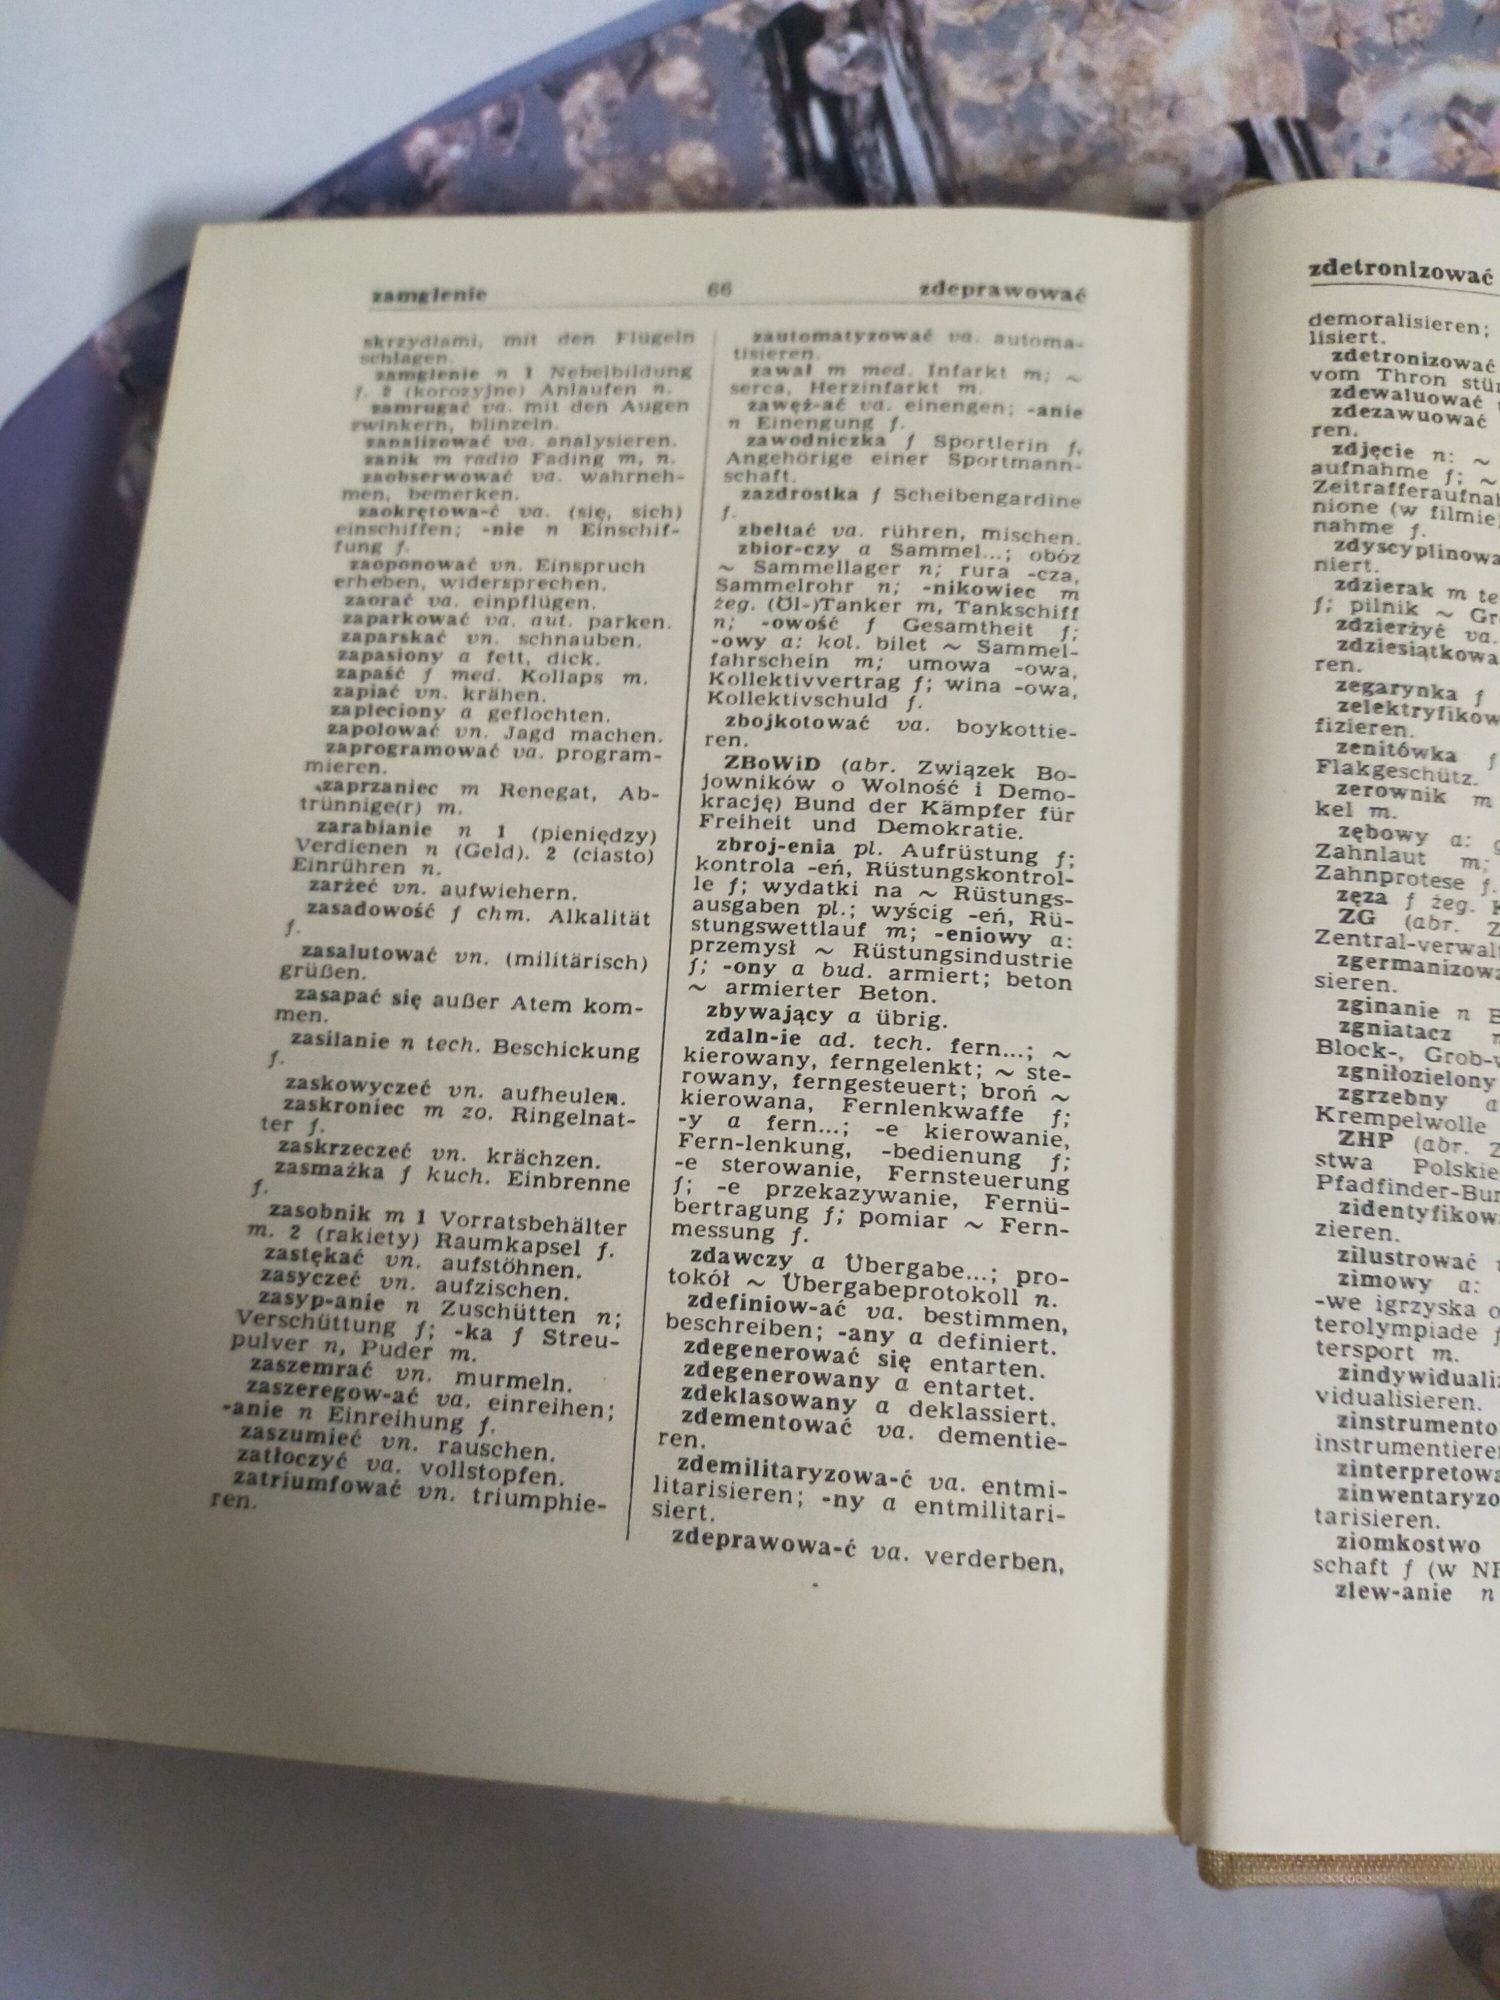 Podręczny słownik polsko-niemiecki Bielas język niemiecki